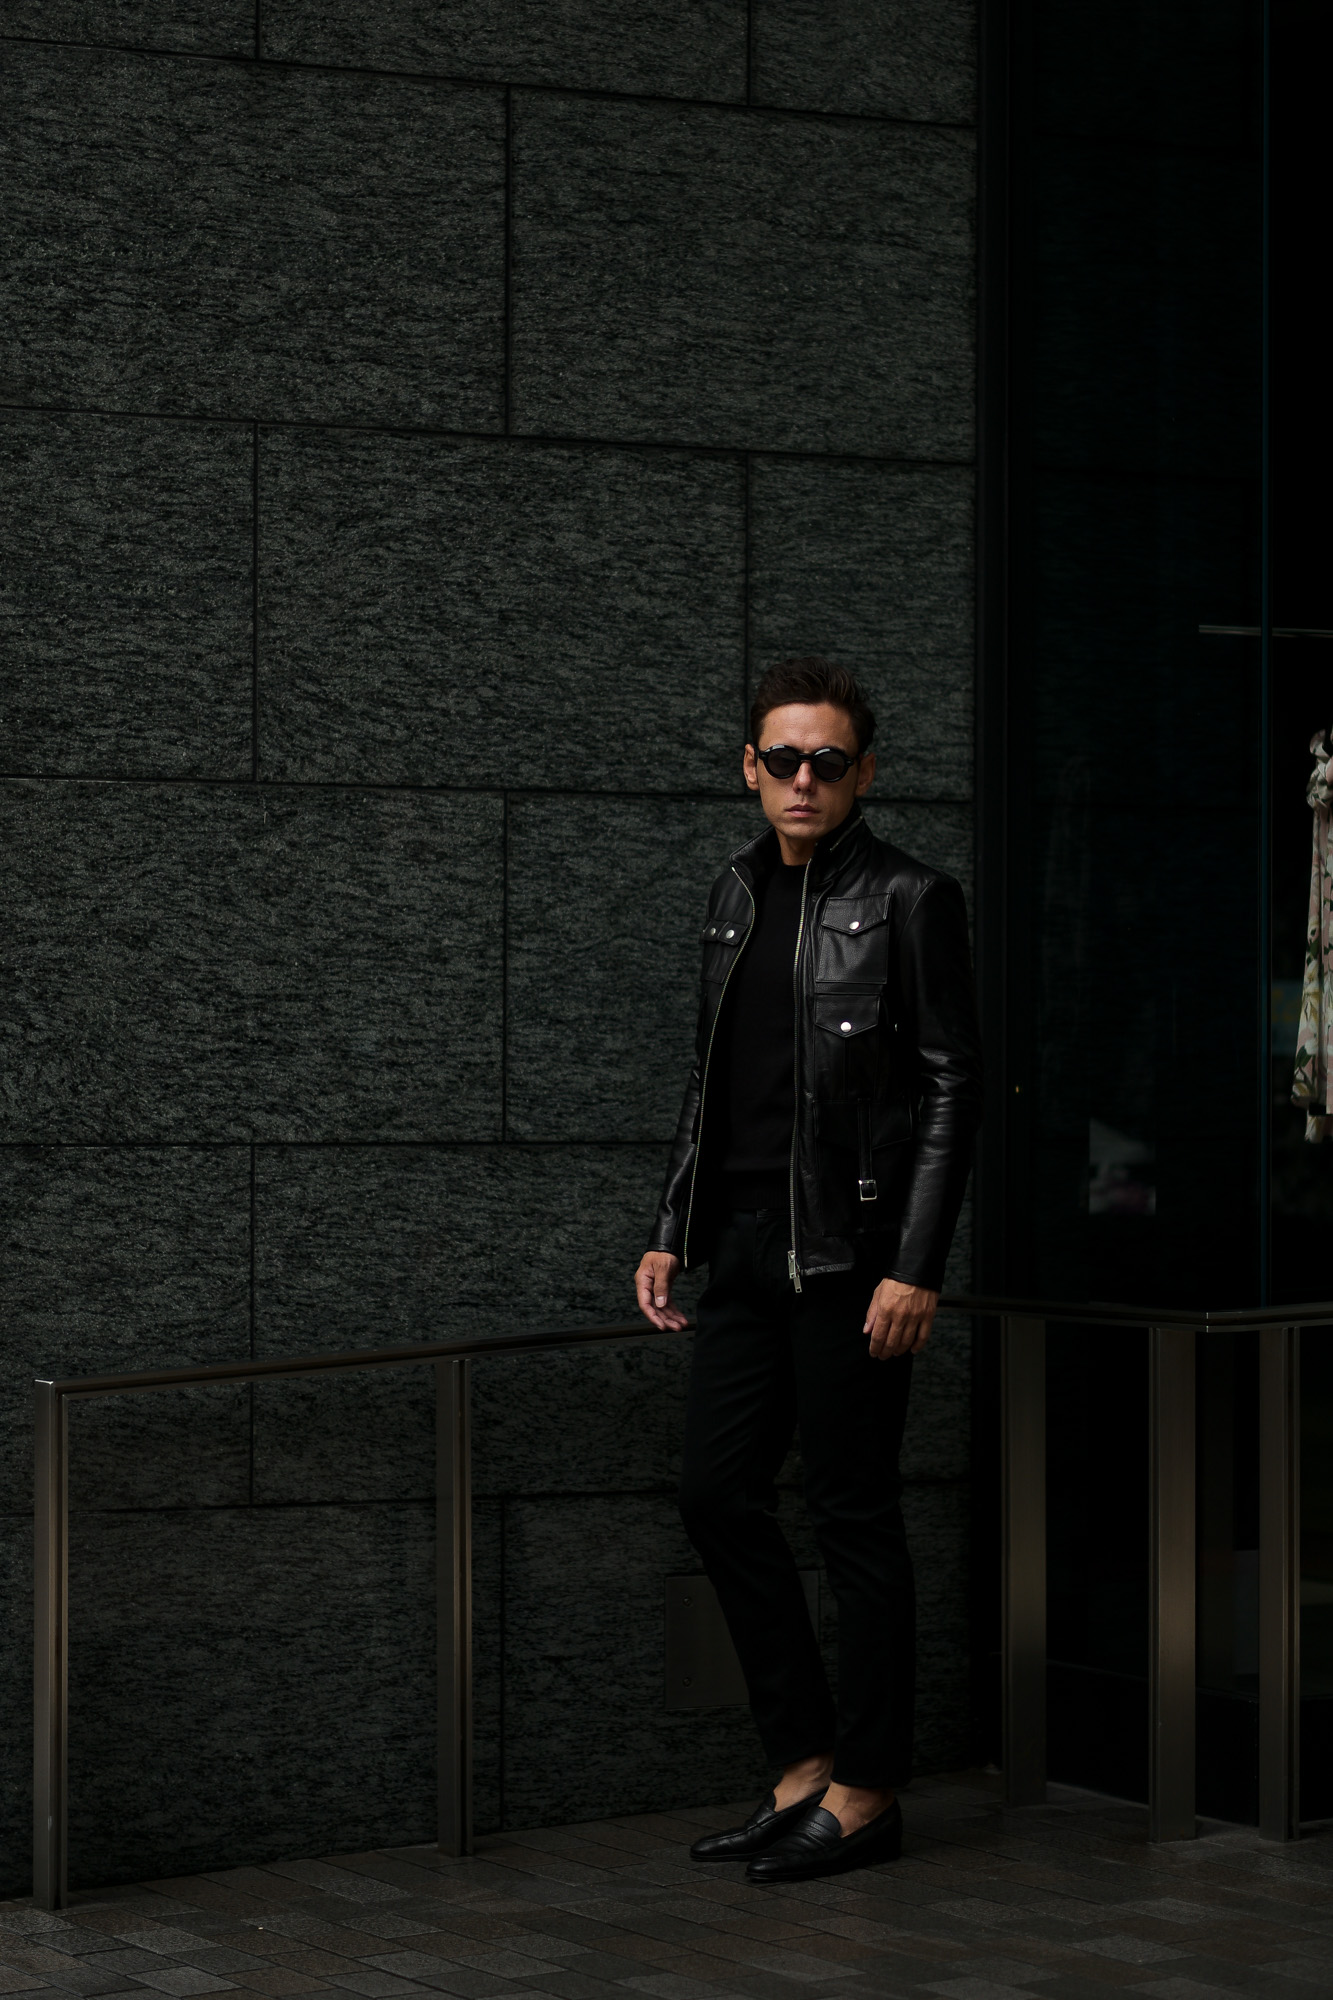 cuervo bopoha (クエルボ ヴァローナ) Satisfaction Leather Collection (サティスファクション レザー コレクション) HUNK(ハンク) BUFFALO LEATHER (バッファロー レザー) レザージャケット BLACK(ブラック) MADE IN JAPAN (日本製) 2020 春夏